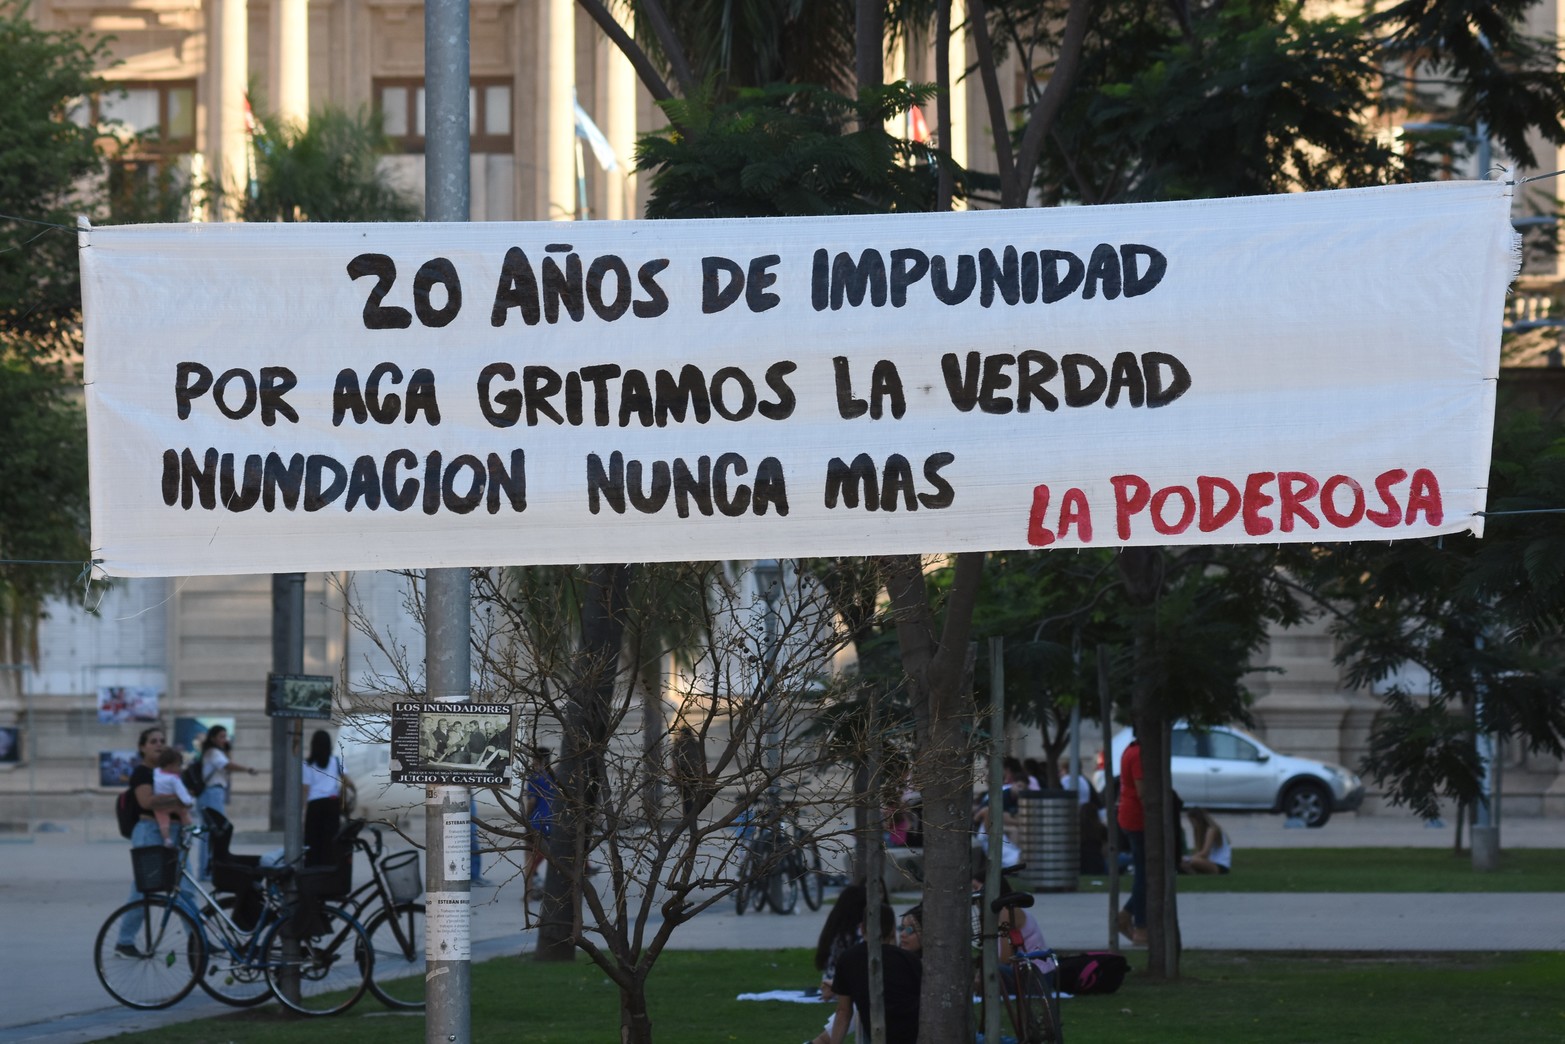 Como cada 29 de abril, este año inundados y agrupaciones políticas llegaron hasta plaza 25 de Mayo a pedir Justicia. Foto Mauricio Garín